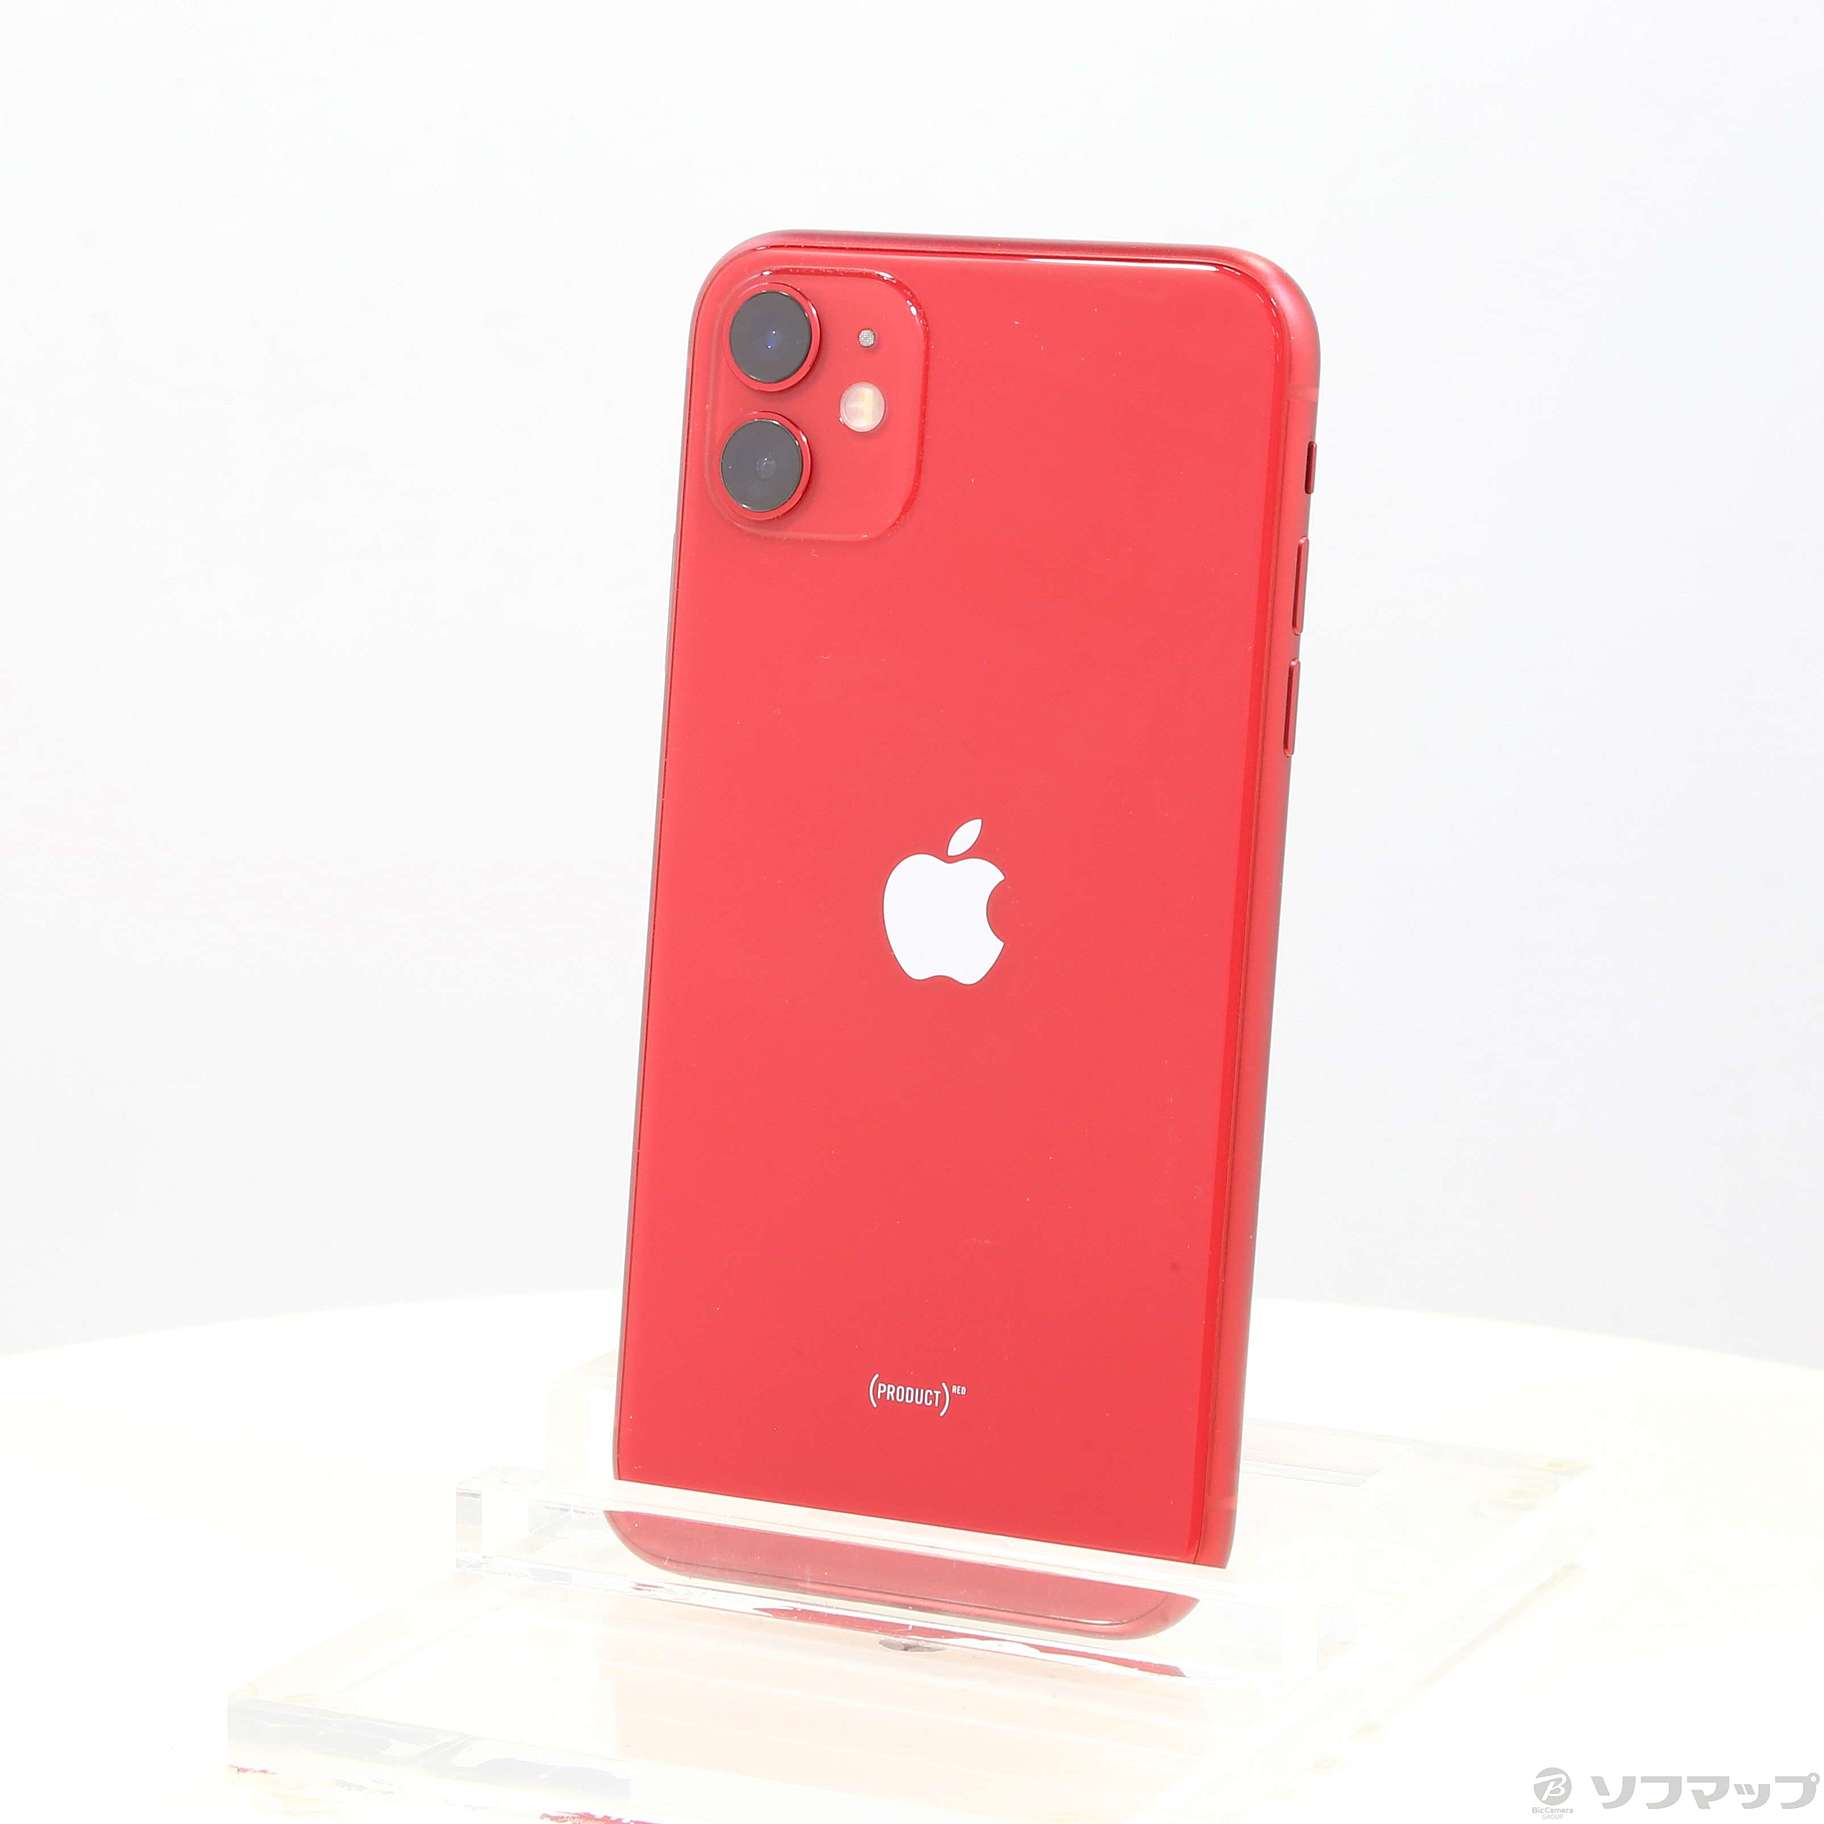 iPhone 11 (PRODUCT)RED 64 GB SIMフリー - 携帯電話